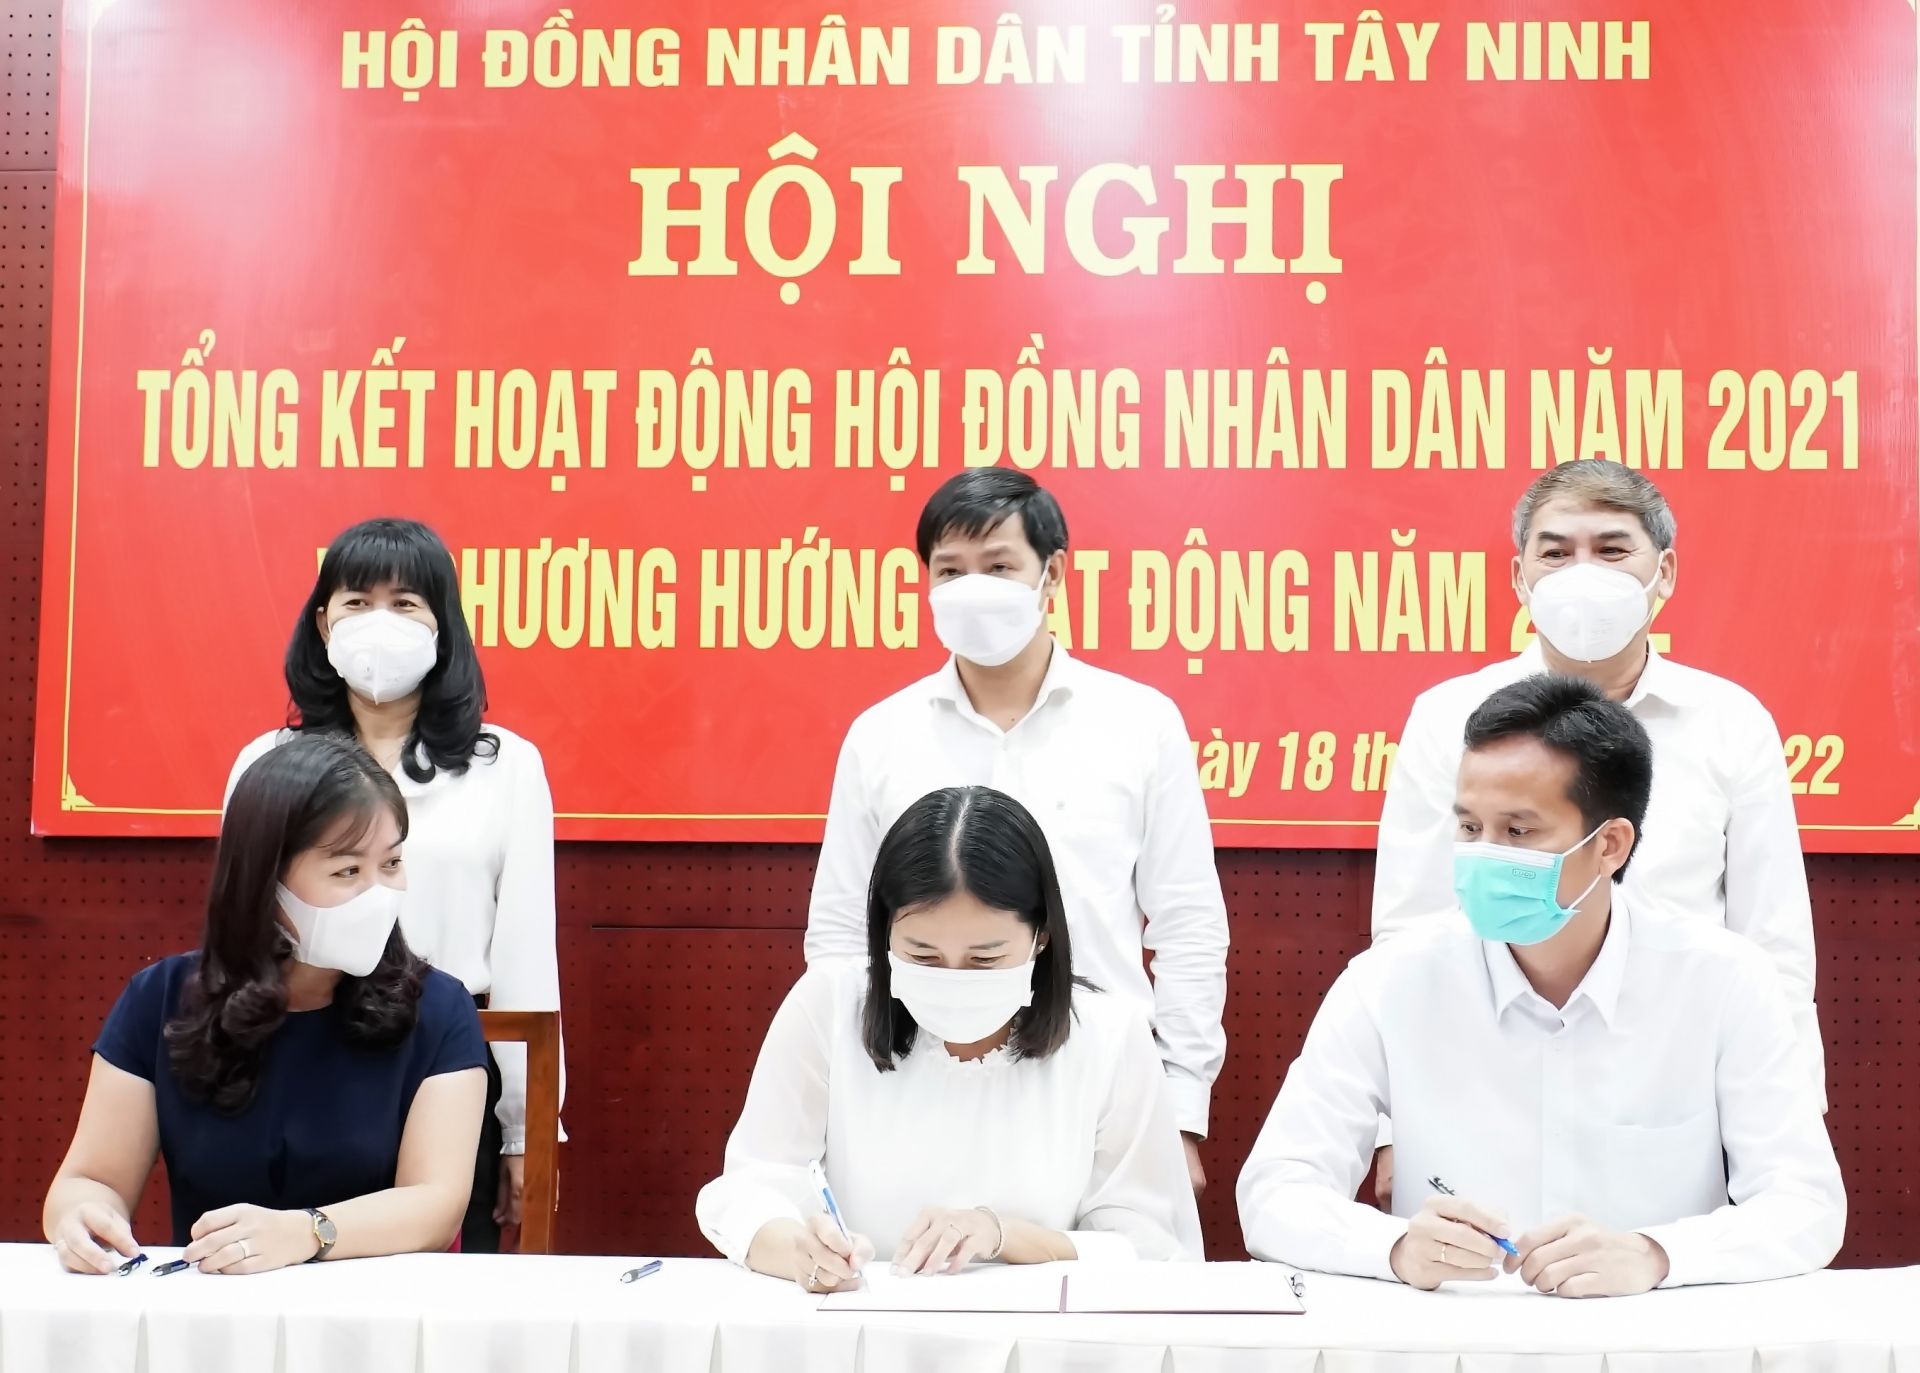 Điểm báo in Tây Ninh ngày 19.01.2022